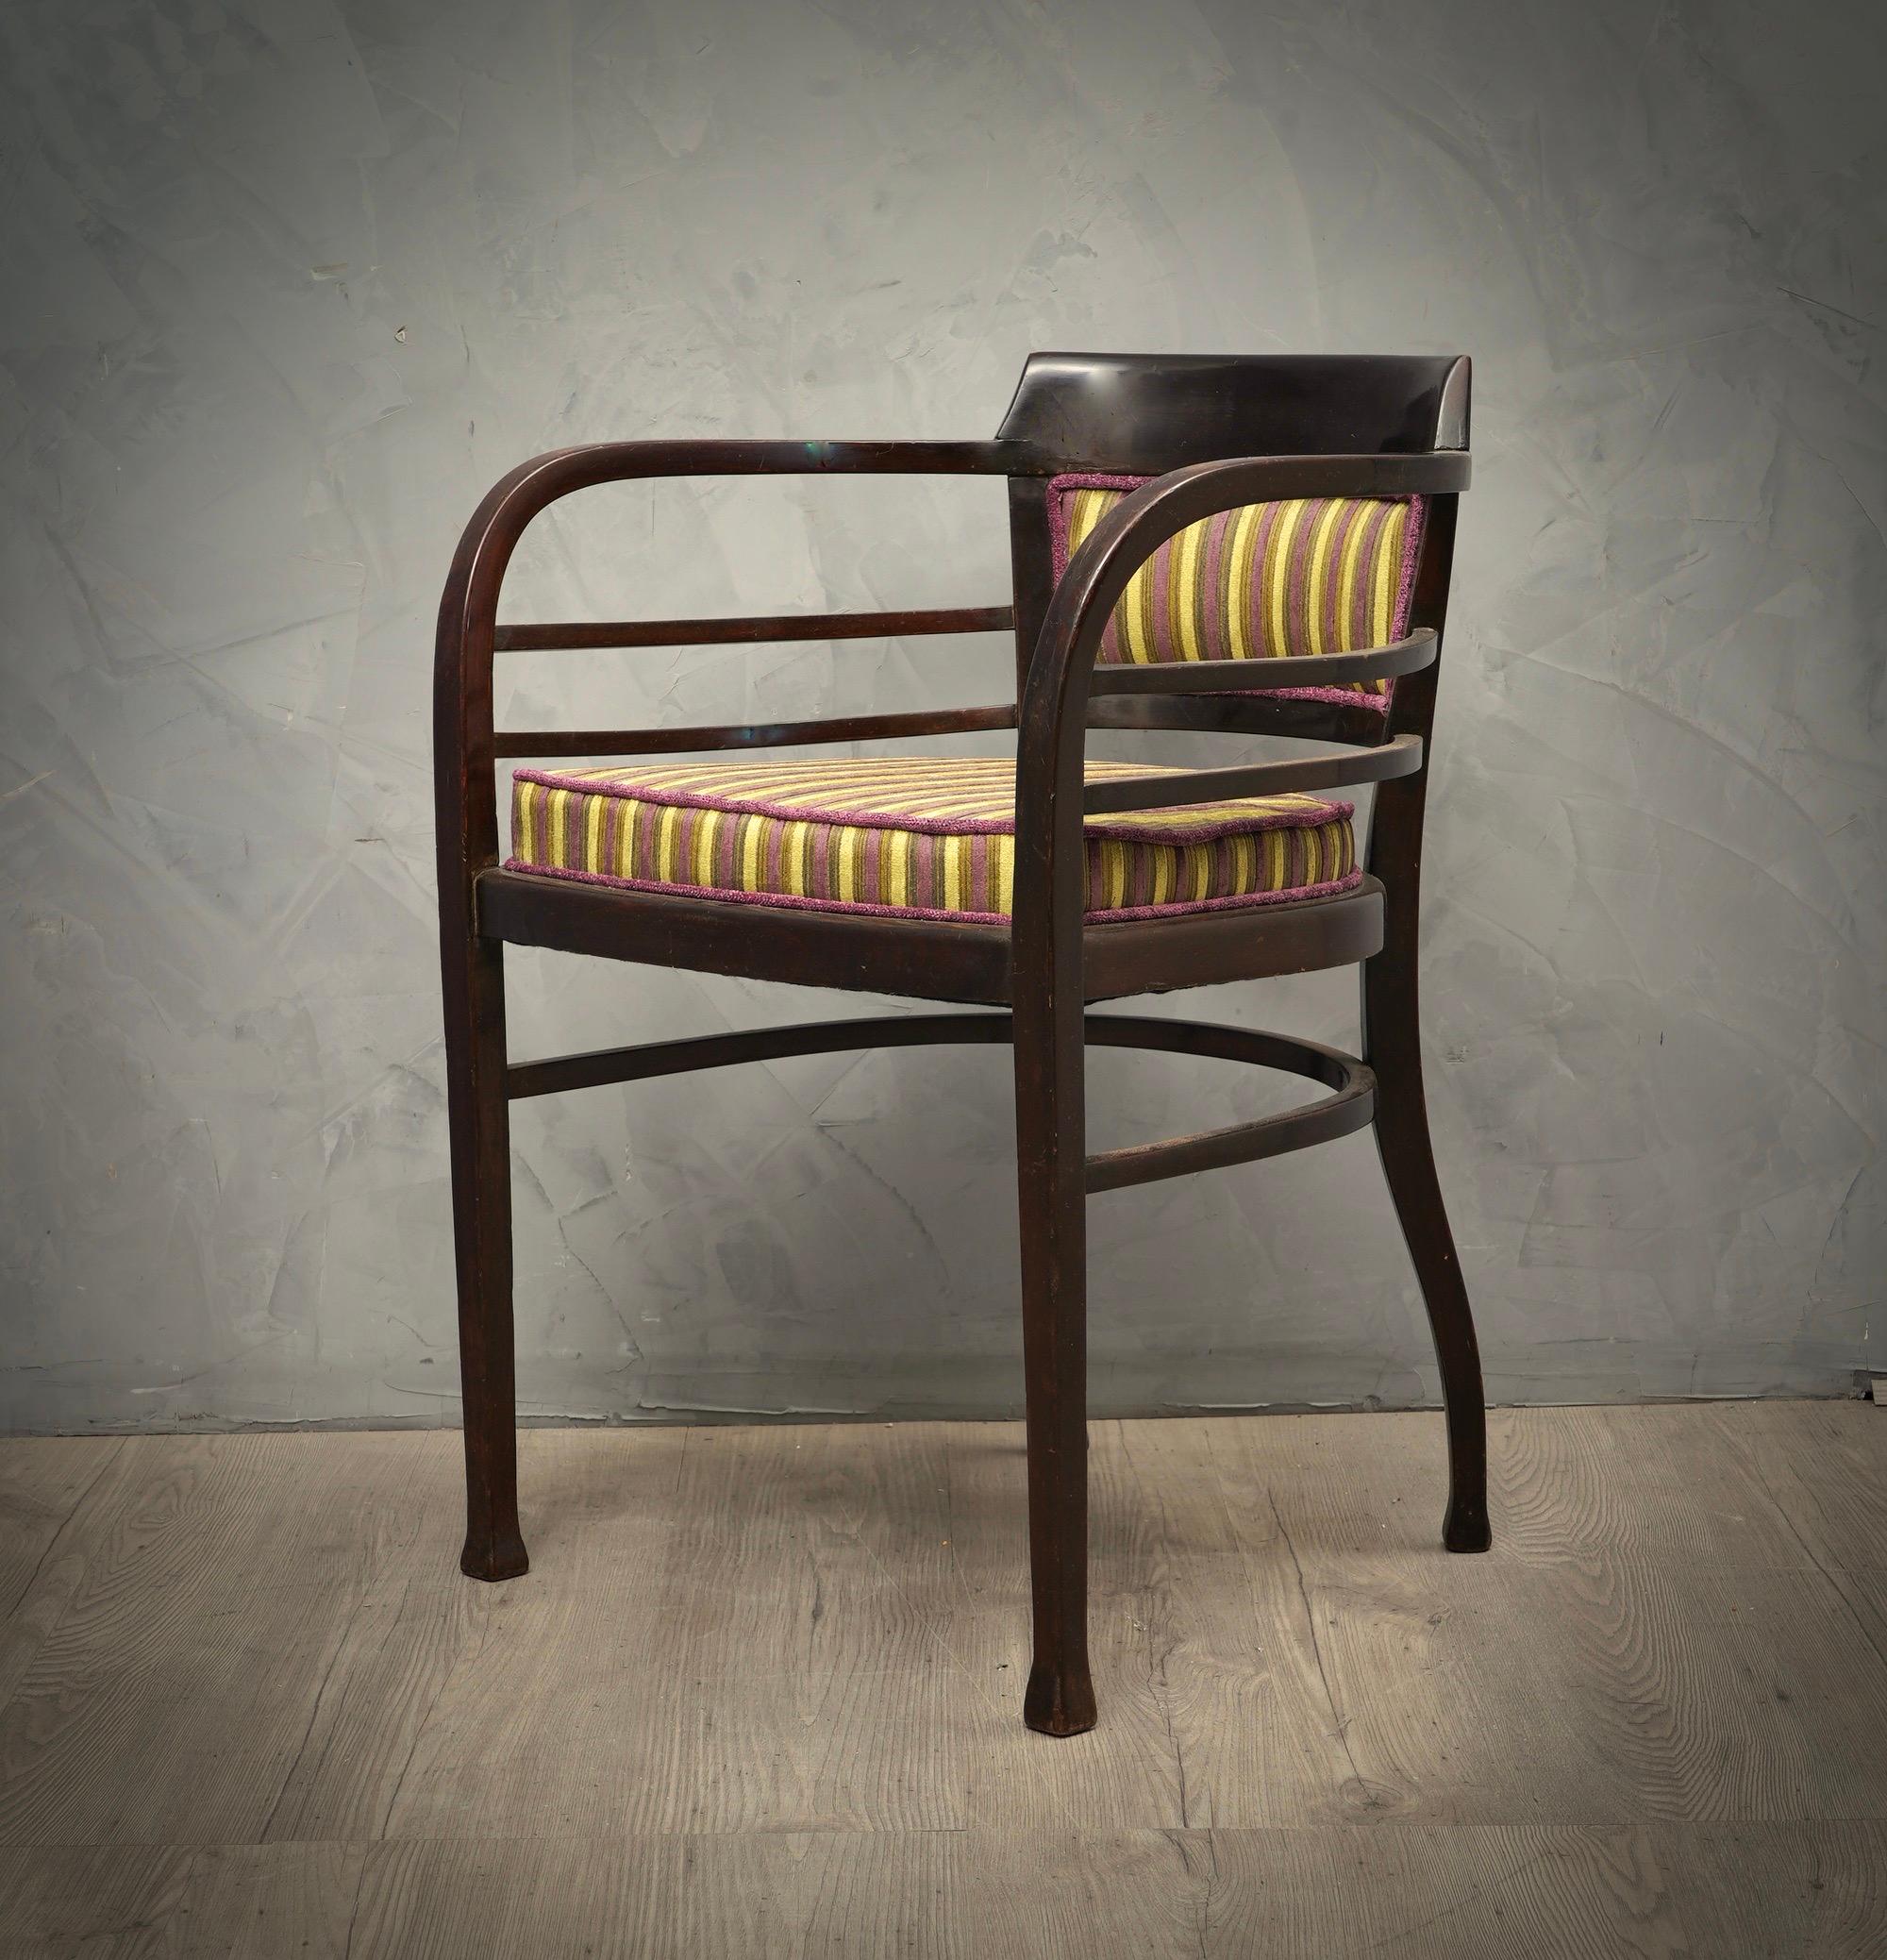 Merveilleux fauteuil du tout début de la période Art Nouveau, forme très particulière pour un design très particulier, enrichi d'un tissu de velours rayé très original. Un design élégant et sobre, mais vraiment unique en son genre.

Le fauteuil a